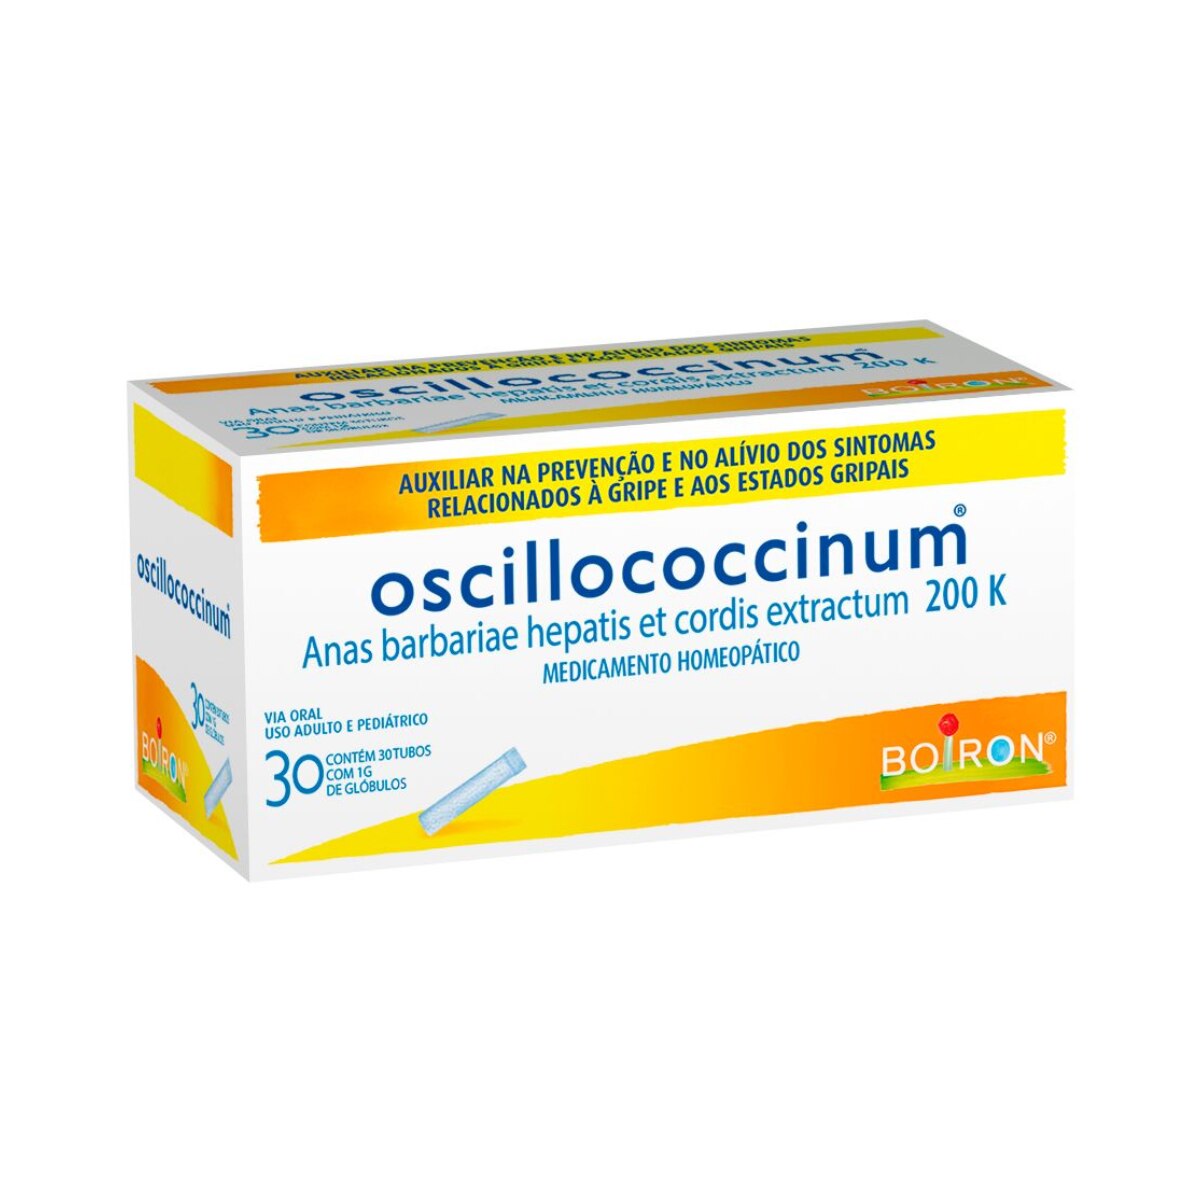 Oscillococcinum 200k 30 tubos com 1g de Globulos